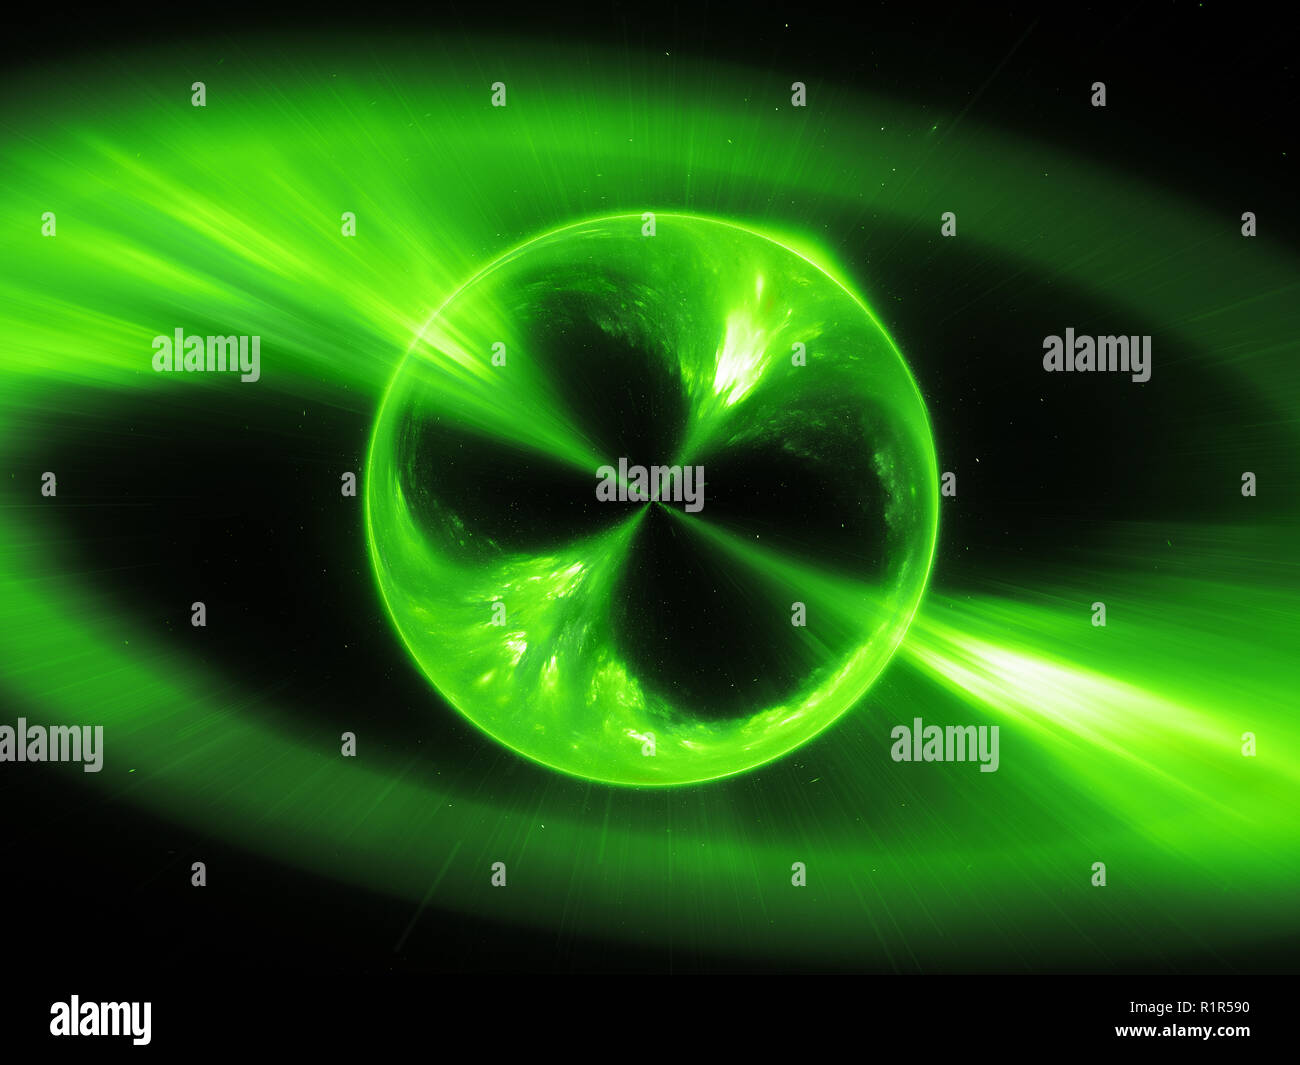 Grün leuchtende supermassive mysterios Objekt im Raum Gamma ray Burst, computer-generierte Zusammenfassung Hintergrund, 3D-Rendering Stockfoto